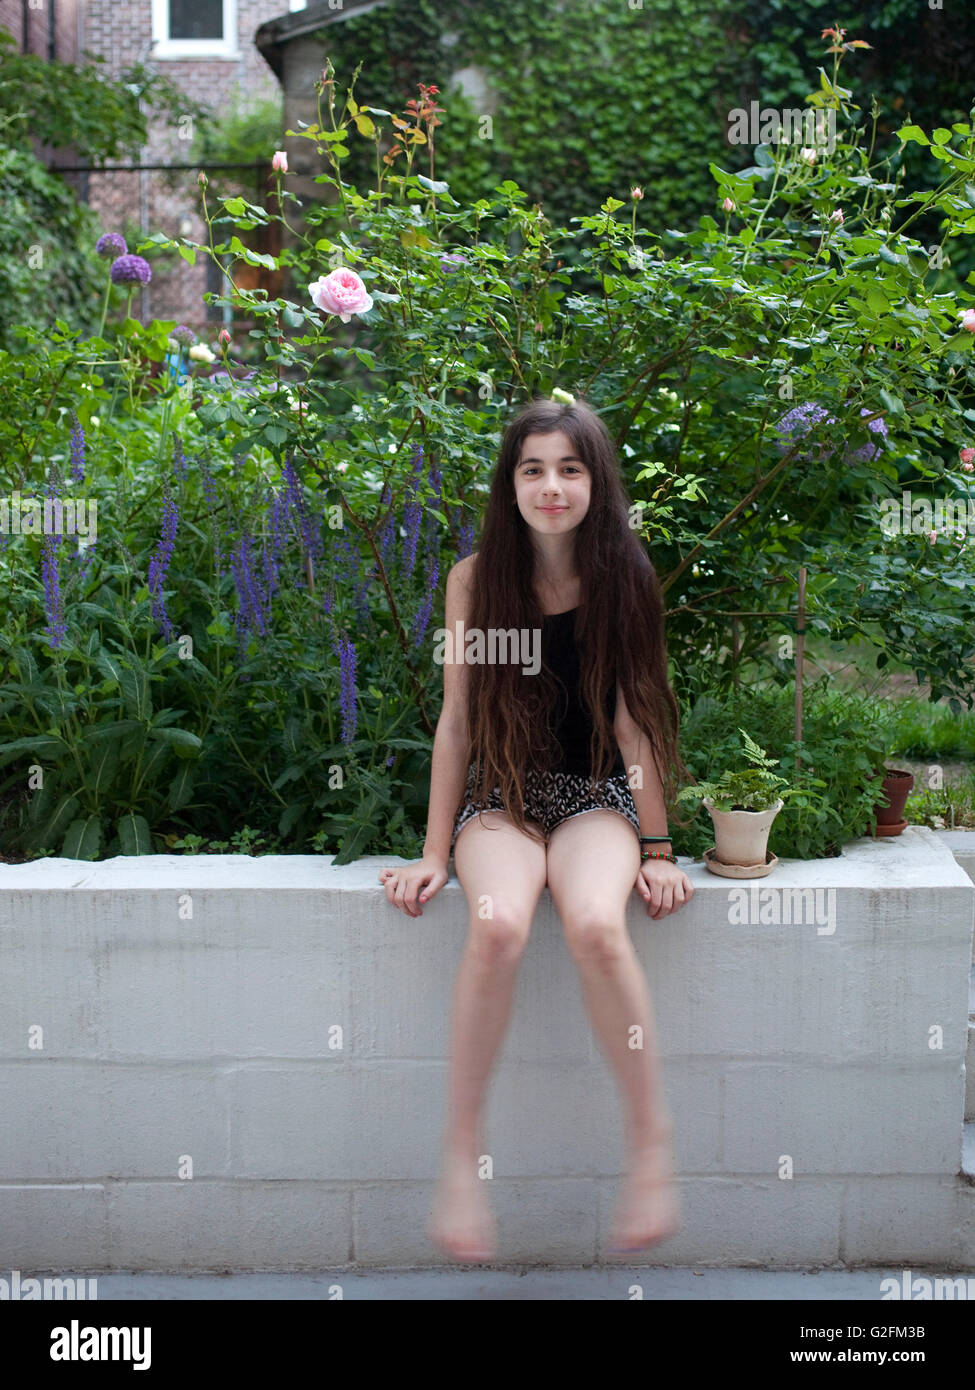 Jeune fille enfant kid porche arrière posées posing cour home garden wall roses salvia pivoine allium Banque D'Images